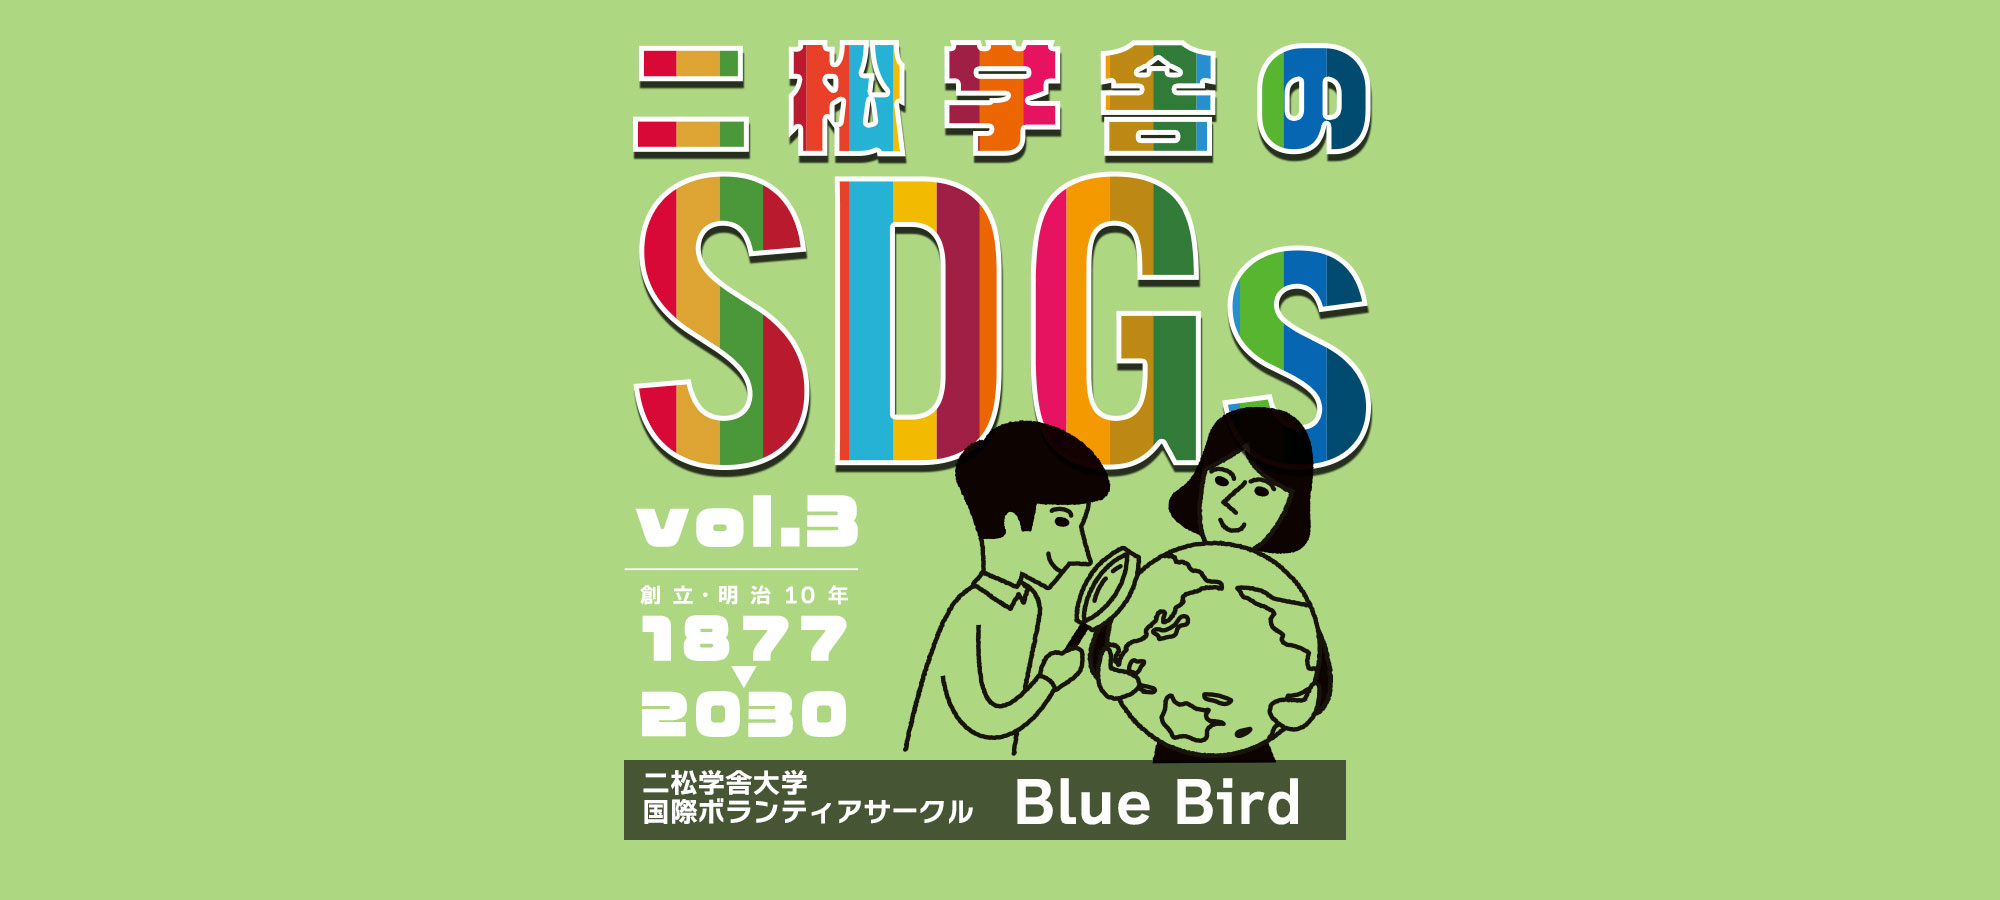 二松学舎のSDGs vol.3 二松学舎大学 国際ボランティアサークル「Blue Bird」